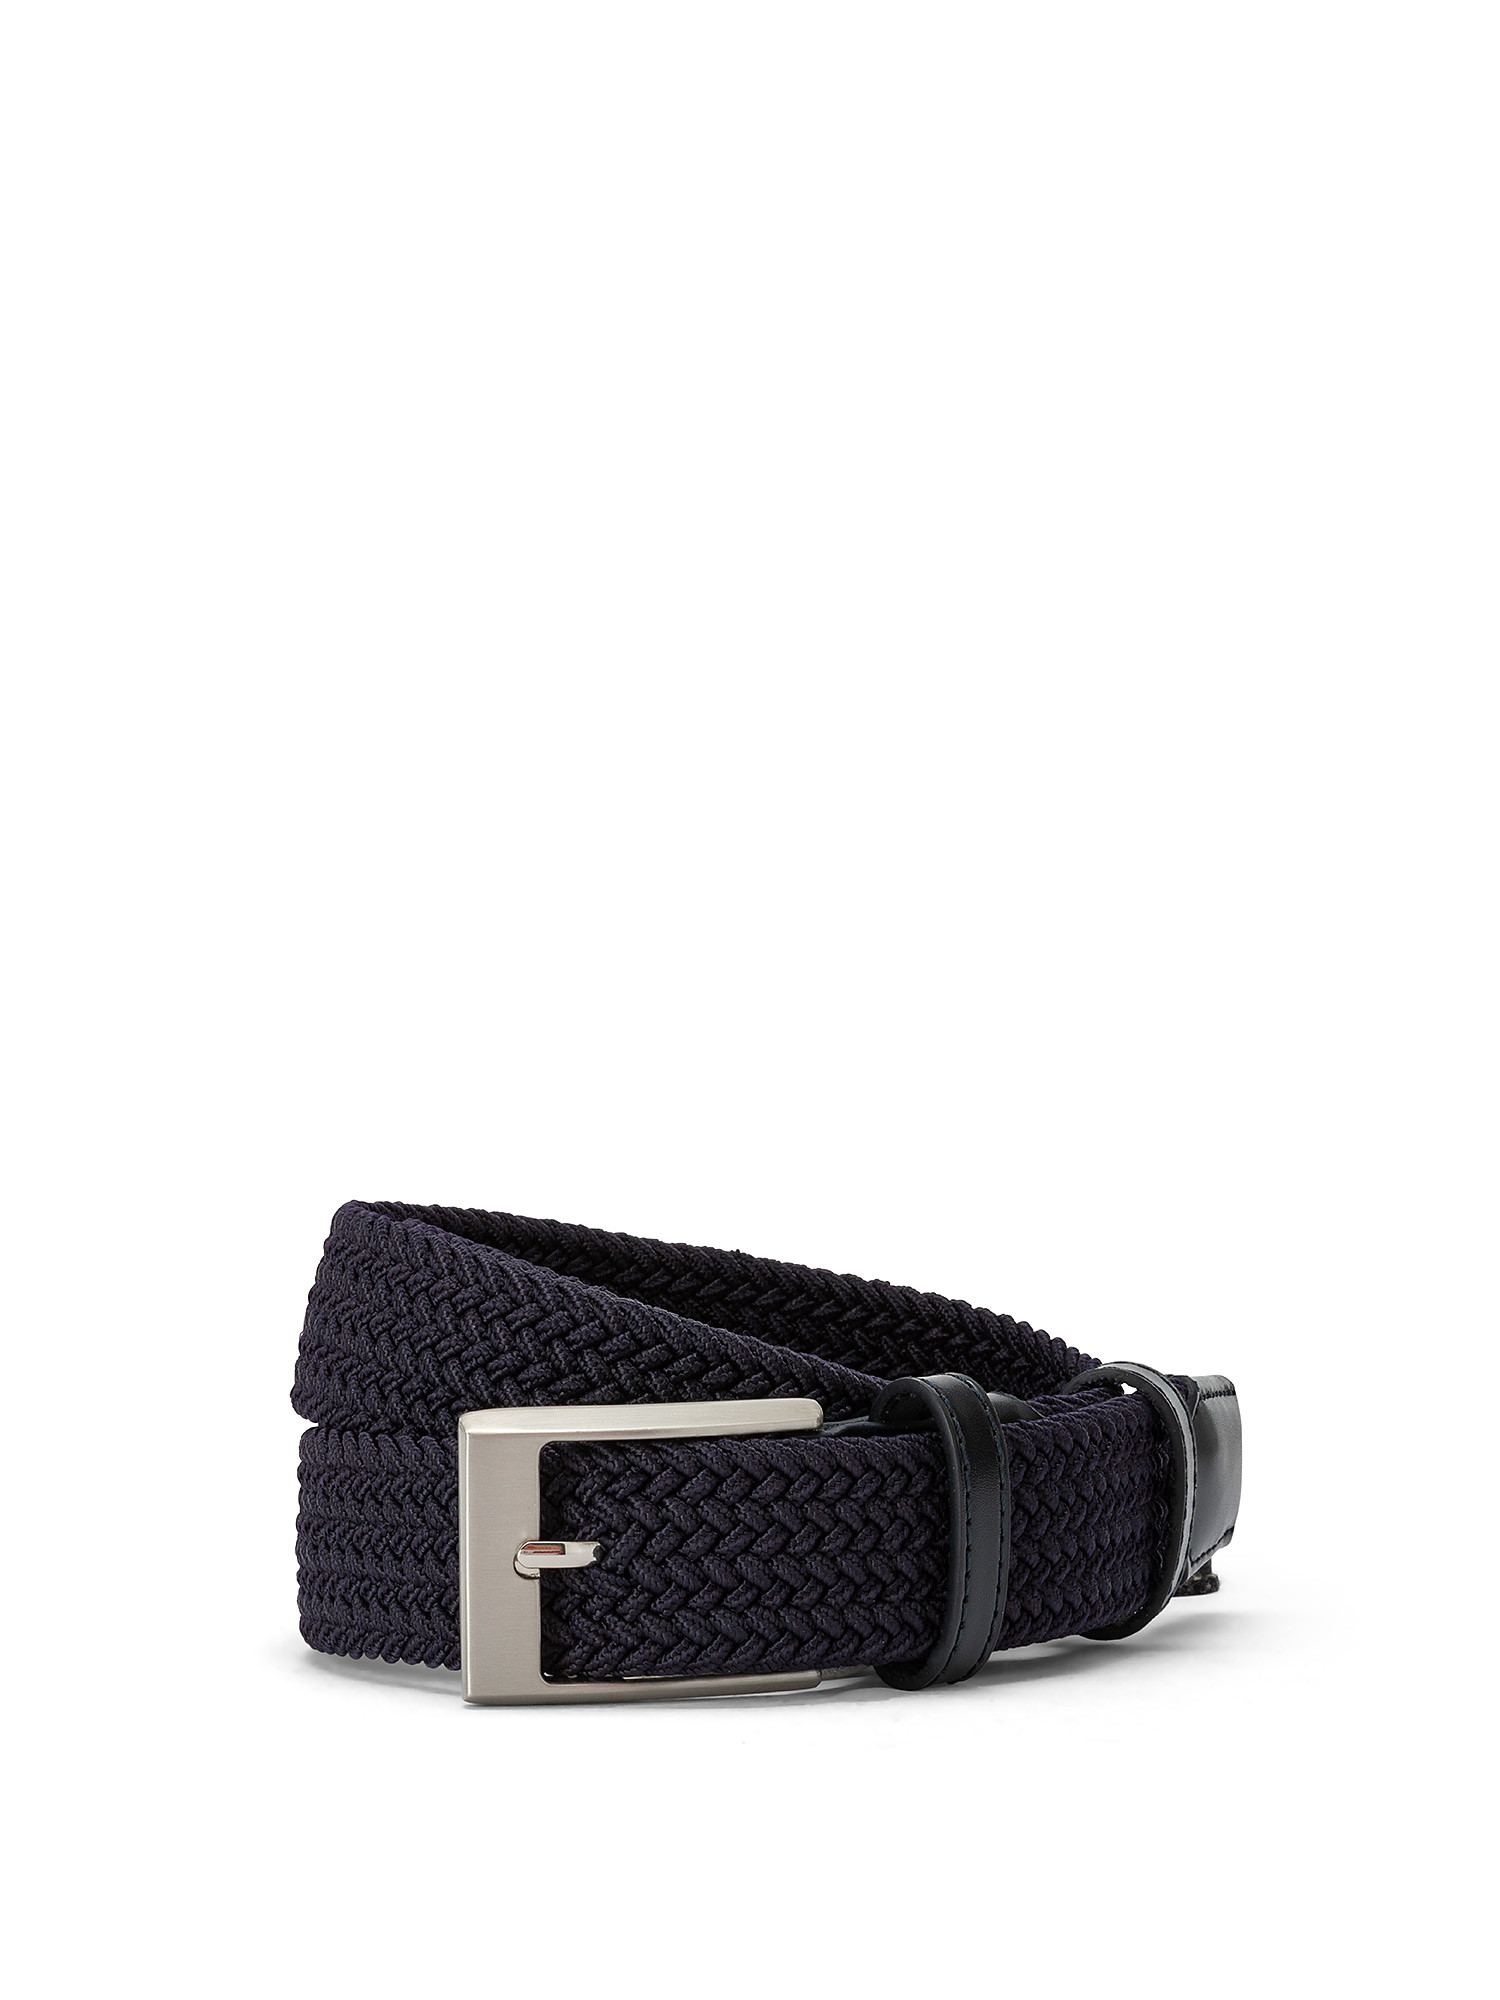 Cintura con elastico intrecciato, Blu, large image number 0